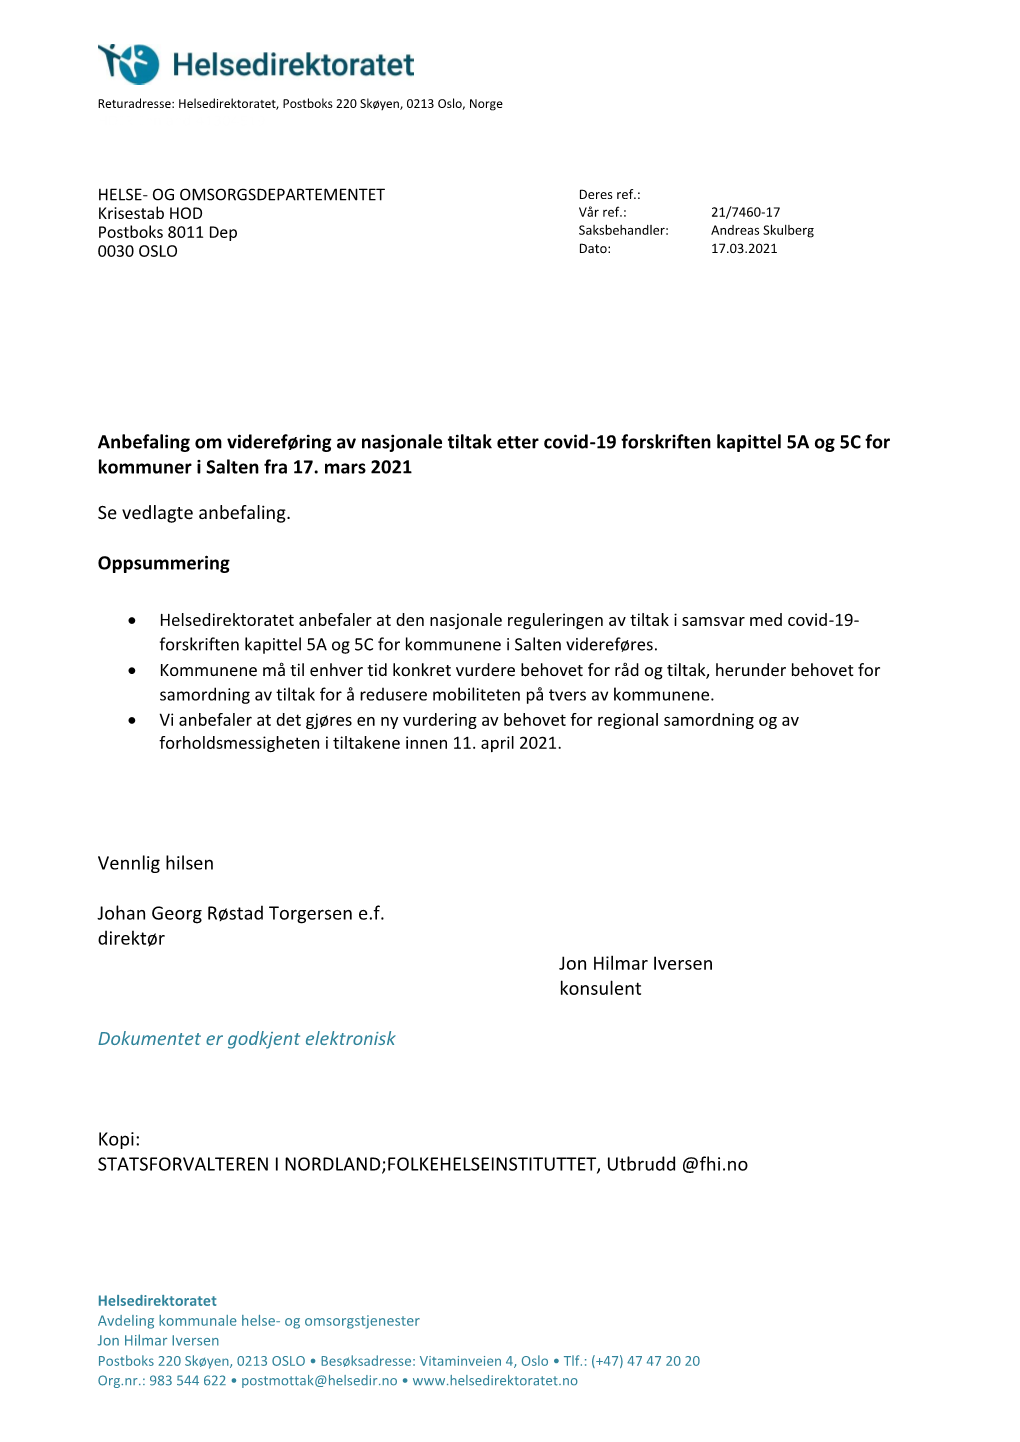 Anbefaling Om Videreføring Av Nasjonale Tiltak Etter Covid-19 Forskriften Kapittel 5A Og 5C for Kommuner I Salten Fra 17